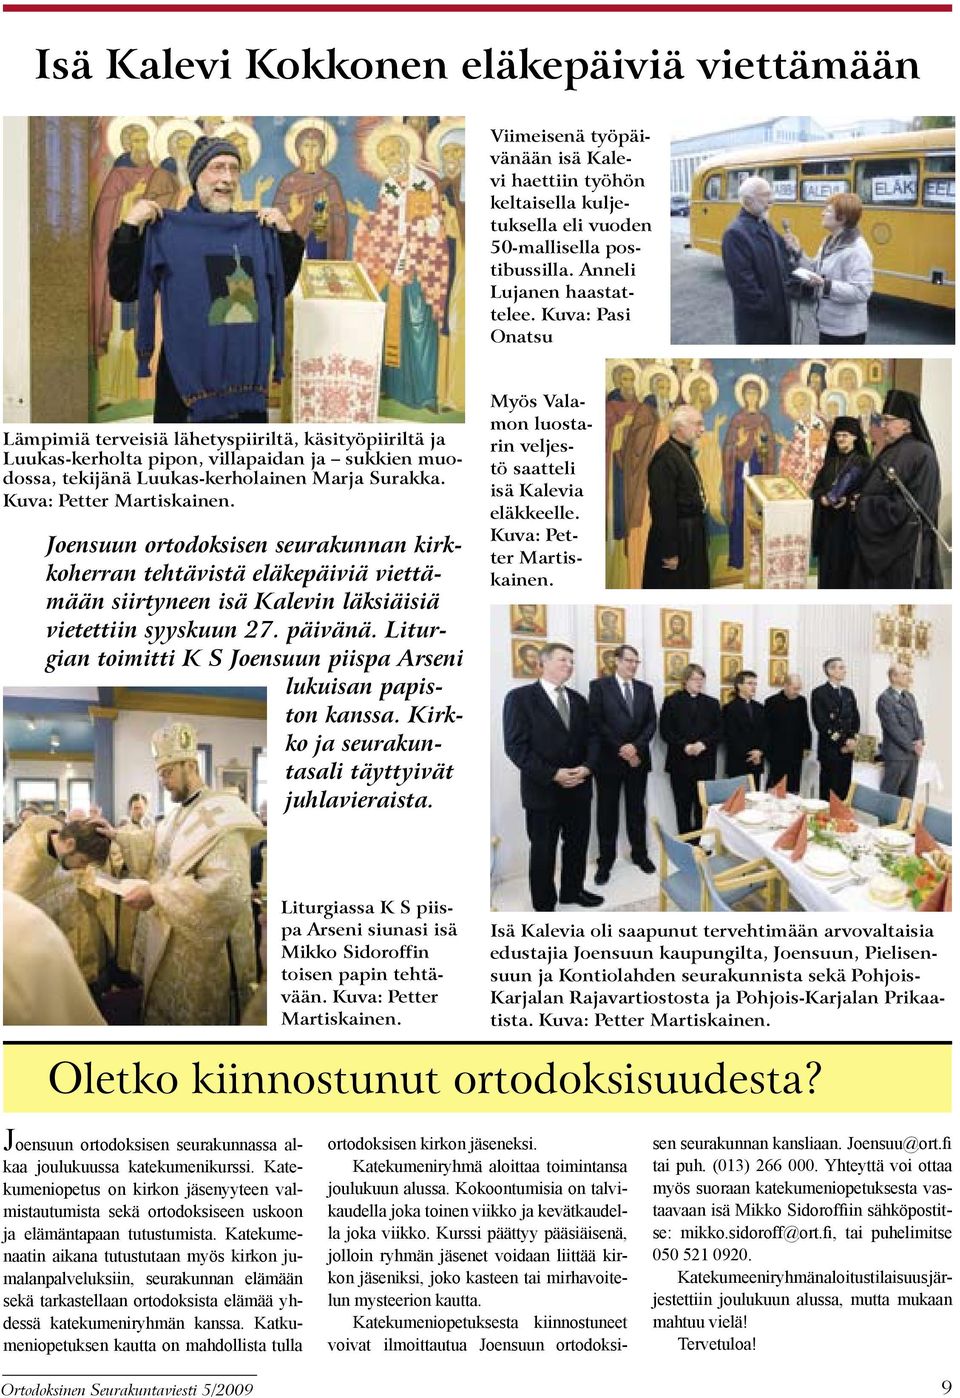 Joensuun ortodoksisen seurakunnan kirkkoherran tehtävistä eläkepäiviä viettämään siirtyneen isä Kalevin läksiäisiä vietettiin syyskuun 27. päivänä.